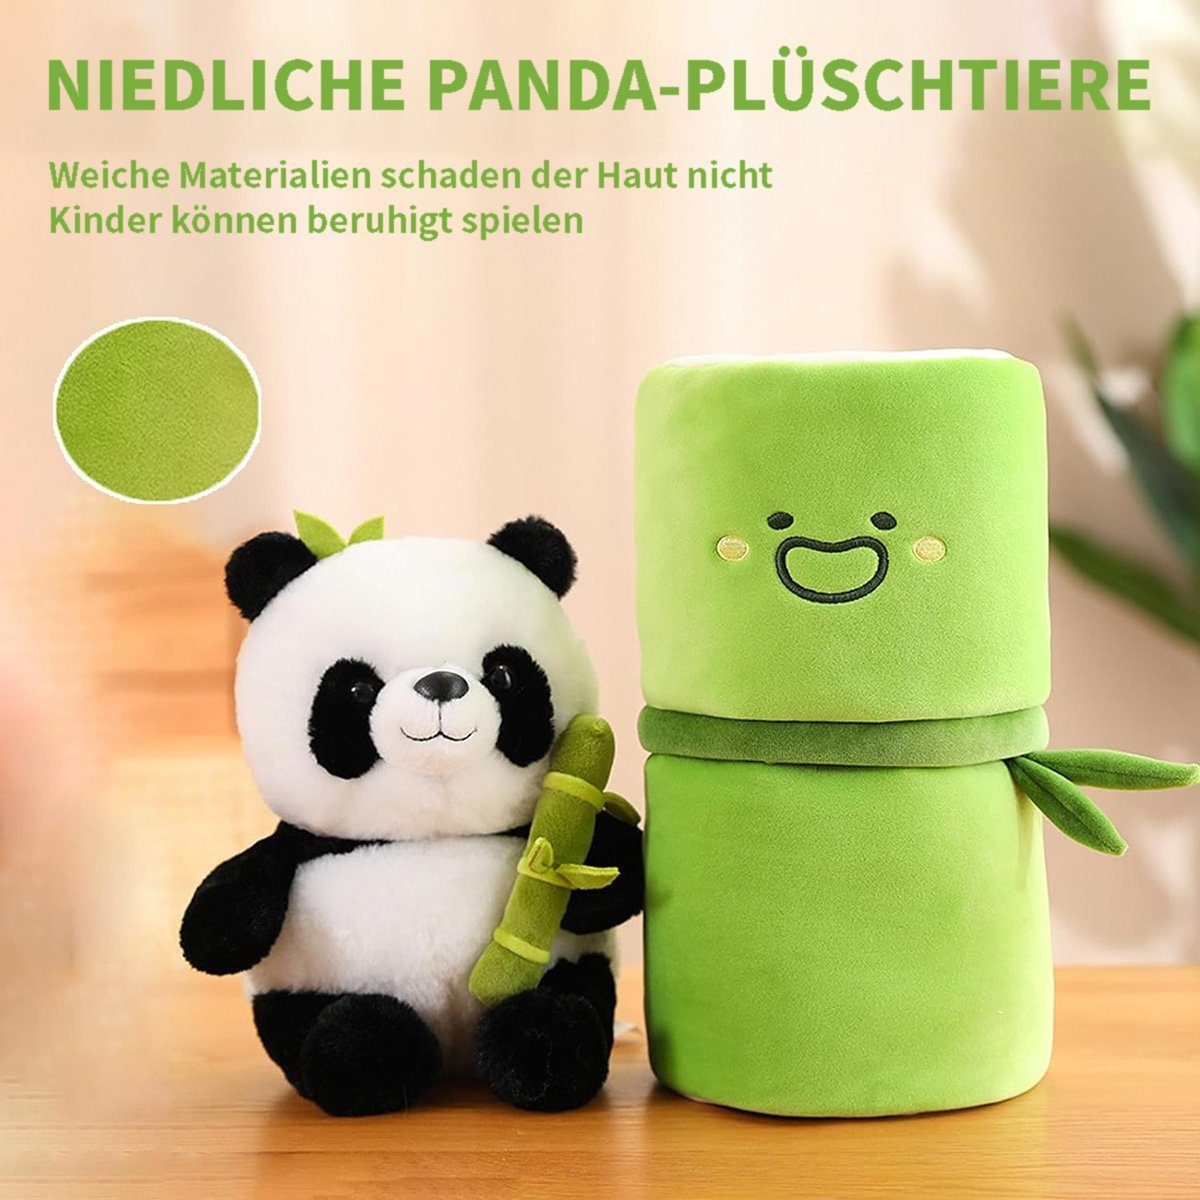 Plüschspielzeug götäzer aus Bambus, Plüsch-Bambus-Panda-Kissen Weiches Fellkissen